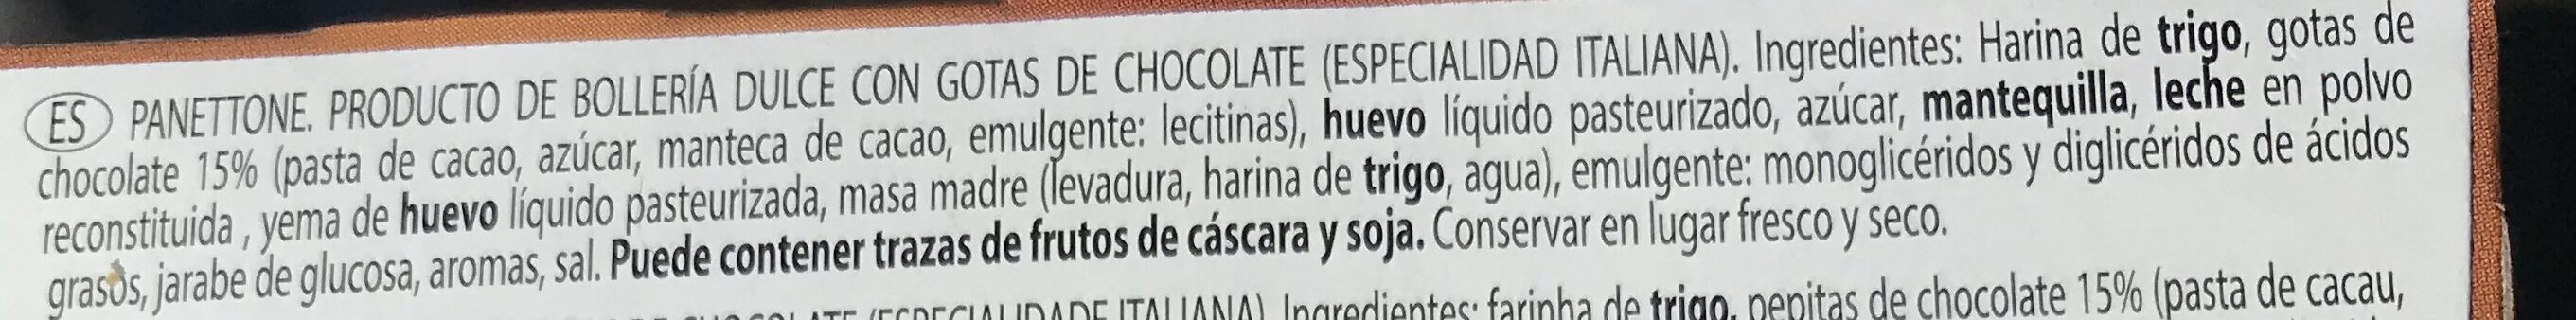 Mamma mamcini panettone gocce di cioccolato - Ingredients - es